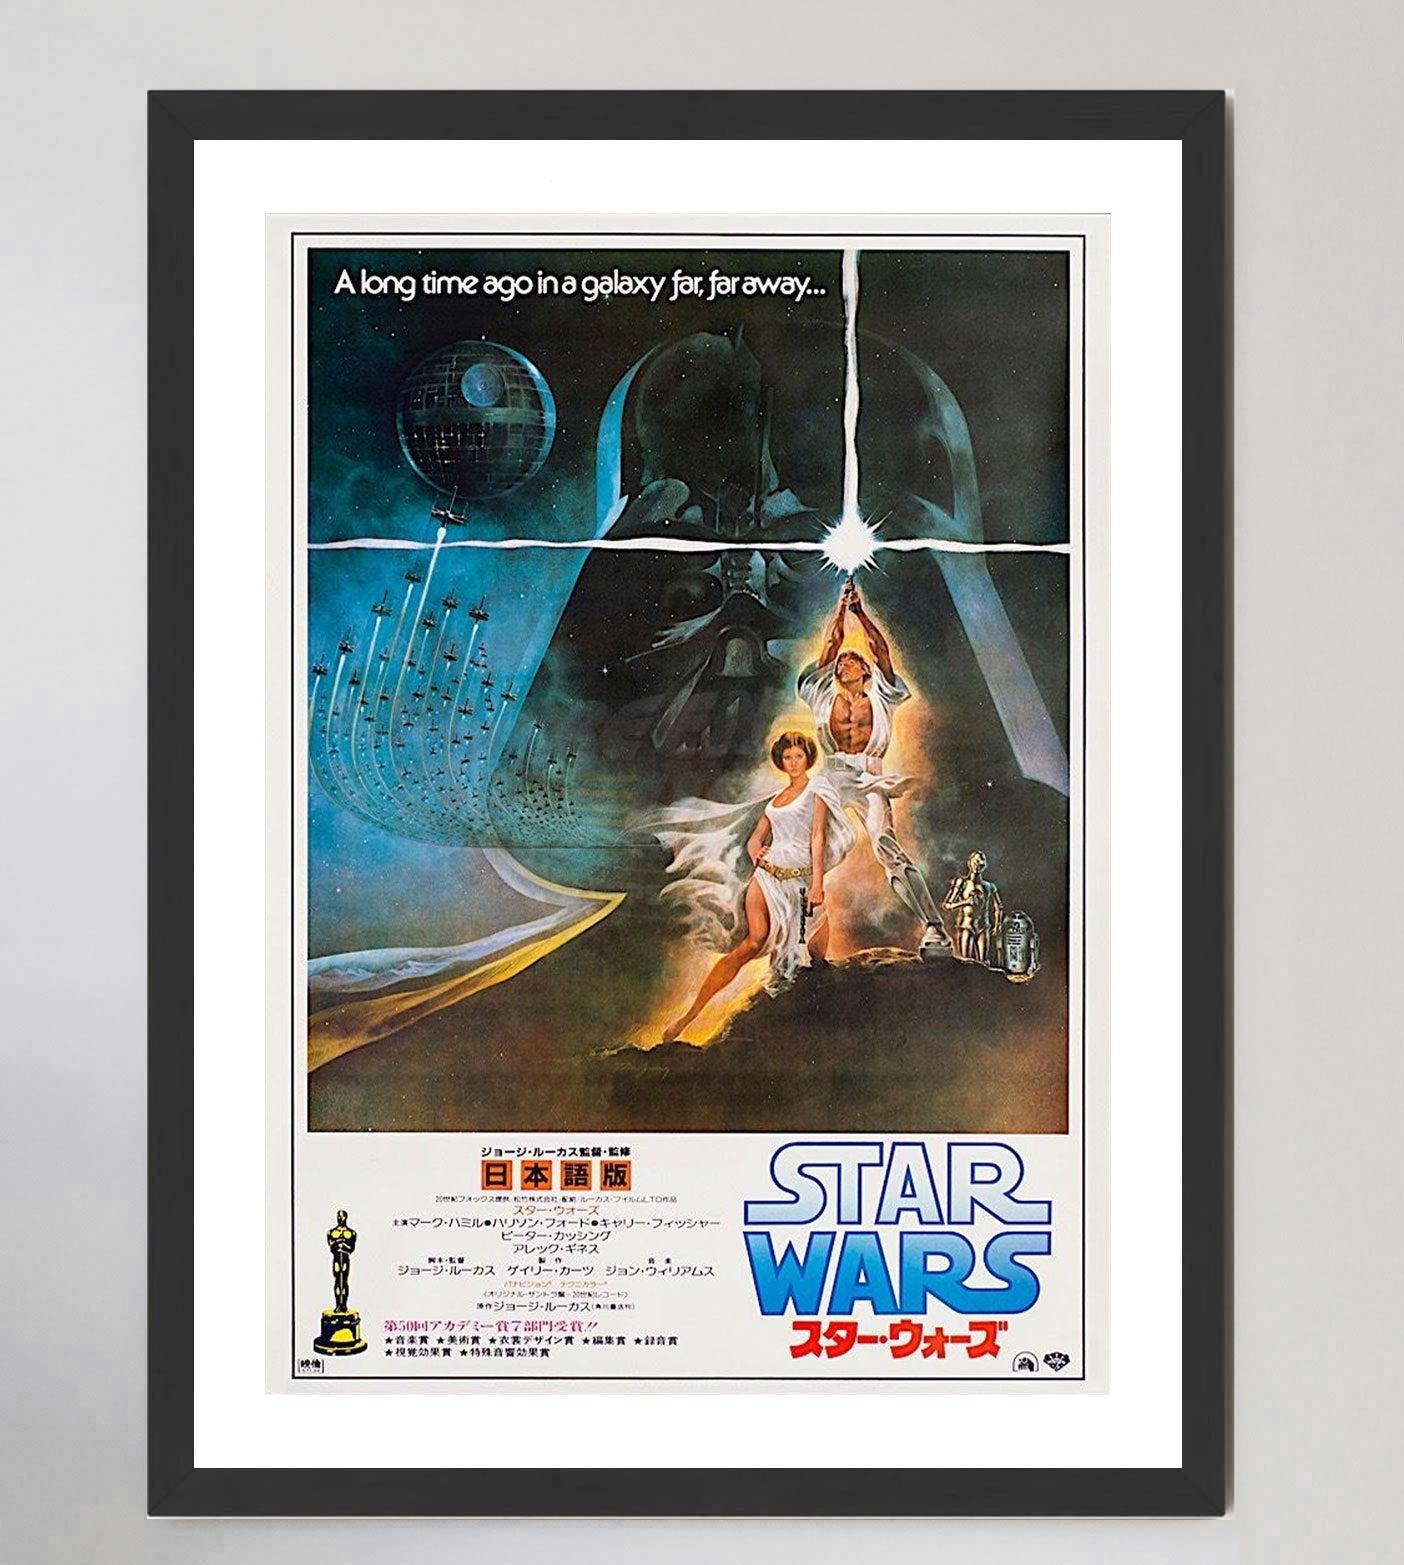 Paper 1982 Star Wars (Japanese) Original Vintage Poster For Sale